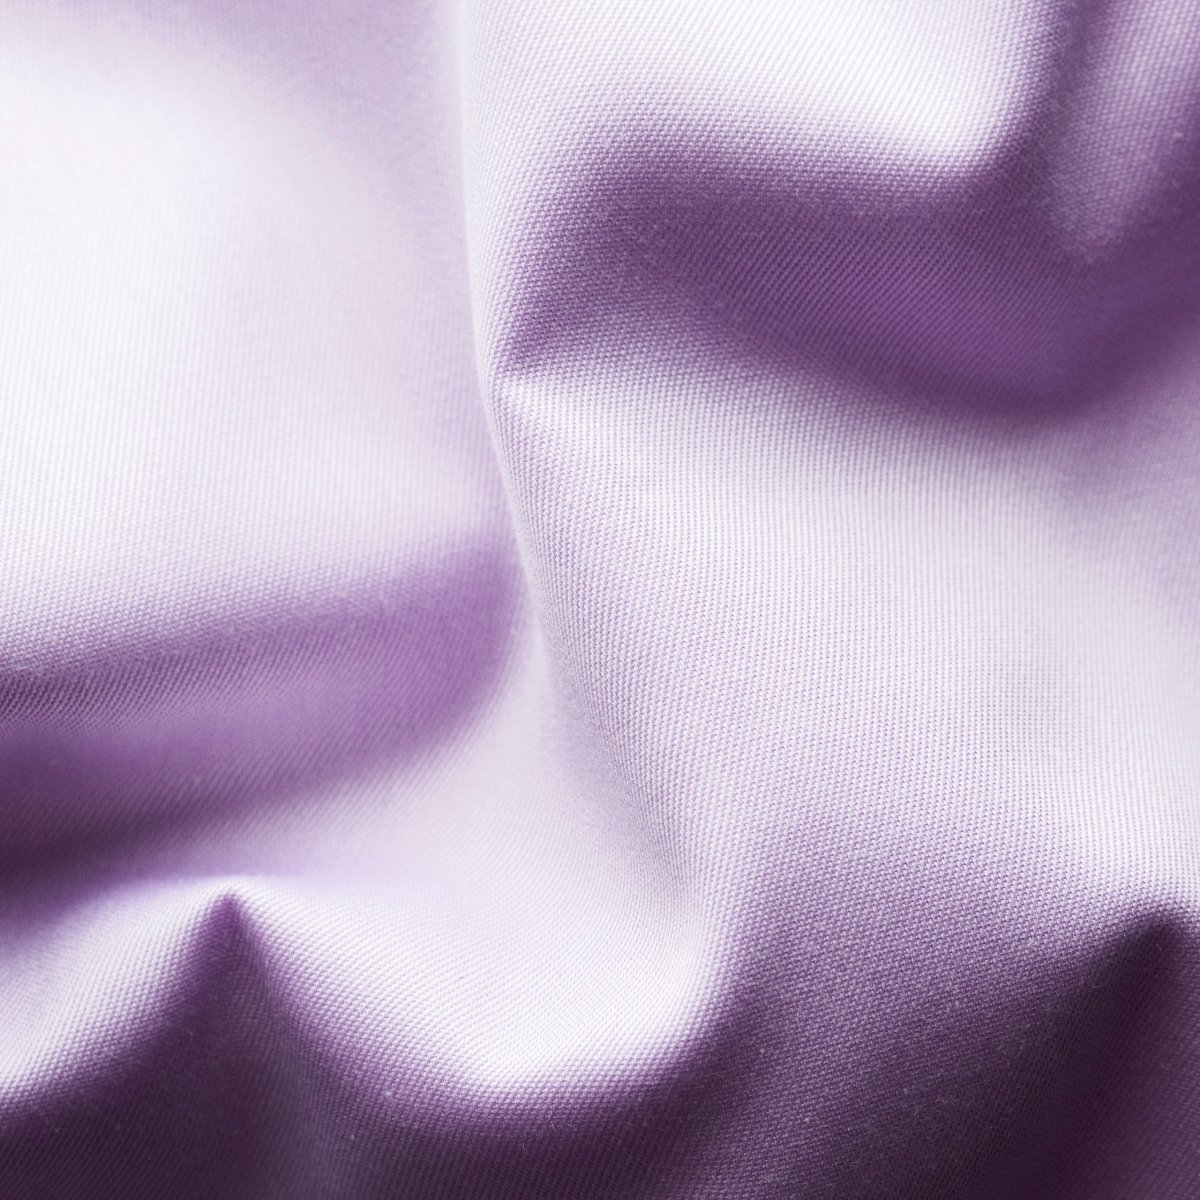 Eton violetiniai slim fit firminio tvilo marškiniai